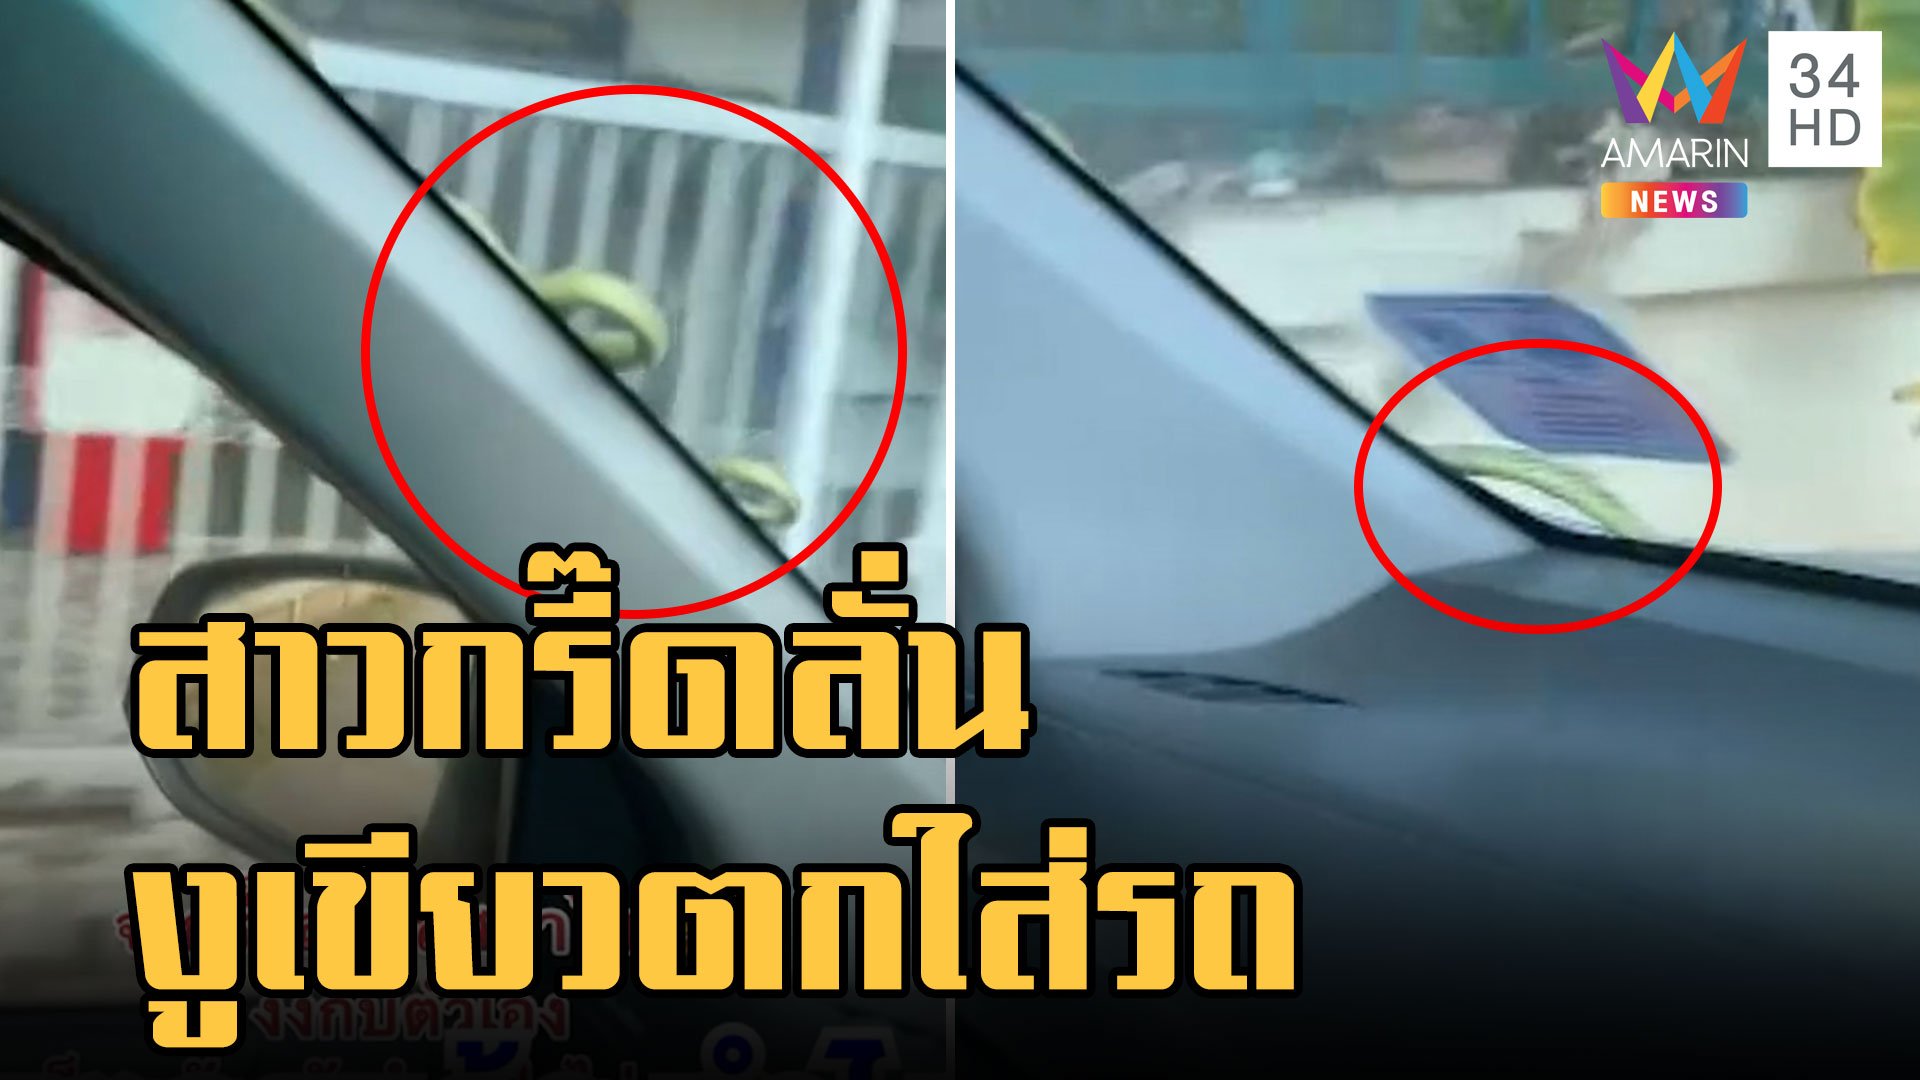 สาวกรี๊ดลั่นรถงูเขียวตกใส่หน้ารถ คนมันกลัวทำไงก็กลัว | ข่าวอรุณอมรินทร์ | 15 พ.ย. 65 | AMARIN TVHD34